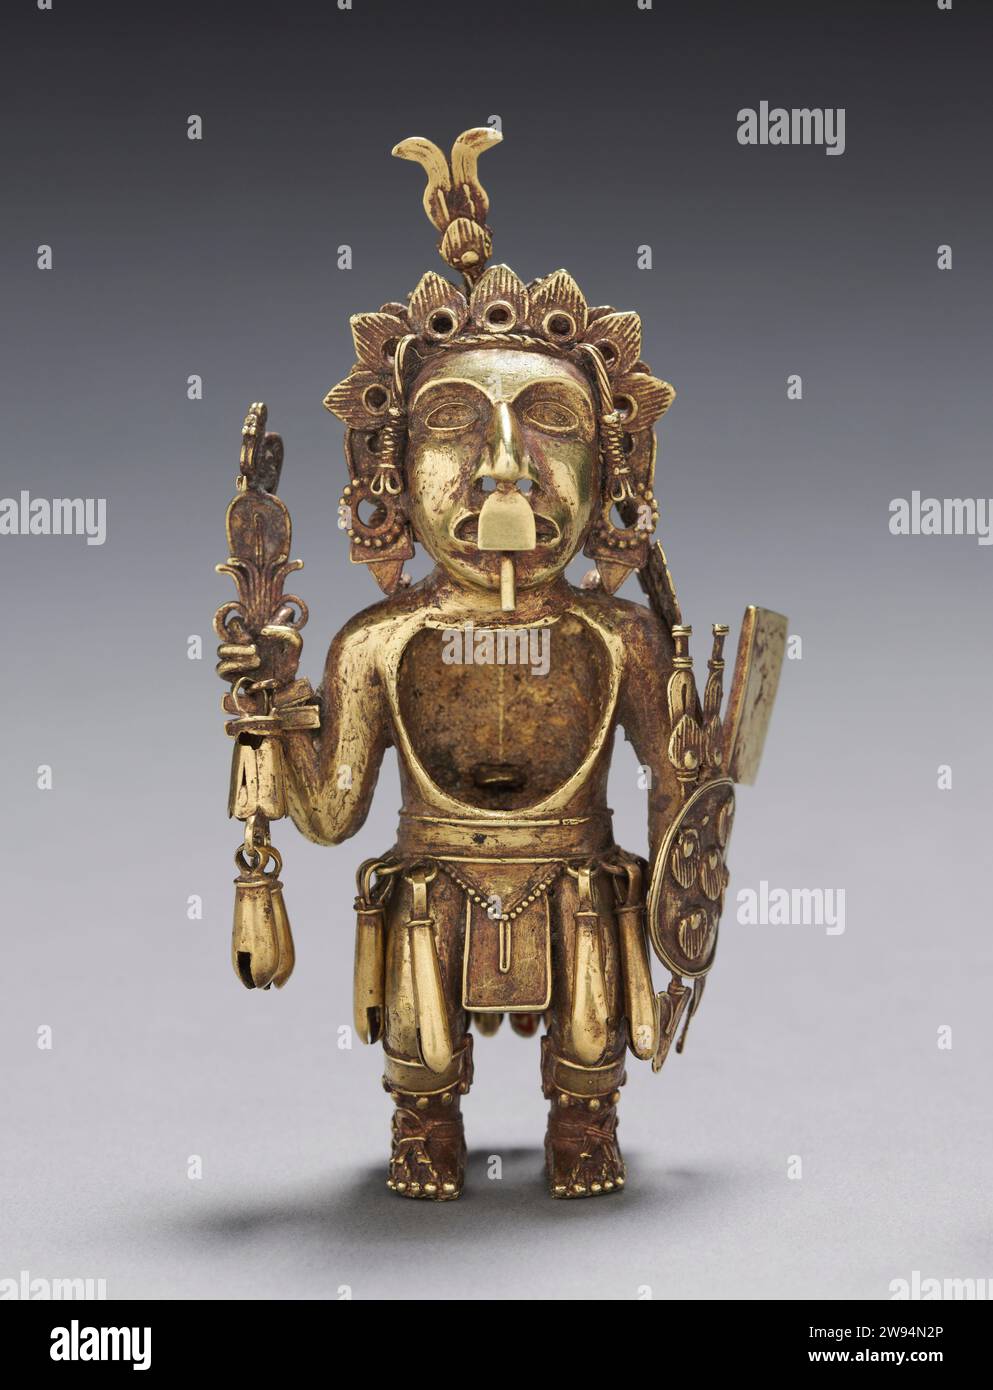 Messico centrale, Tetzcoco - Figura di un Guerriero dopo il 1325 , Azteco, periodo post-classico lega oro-argento-rame Foto Stock